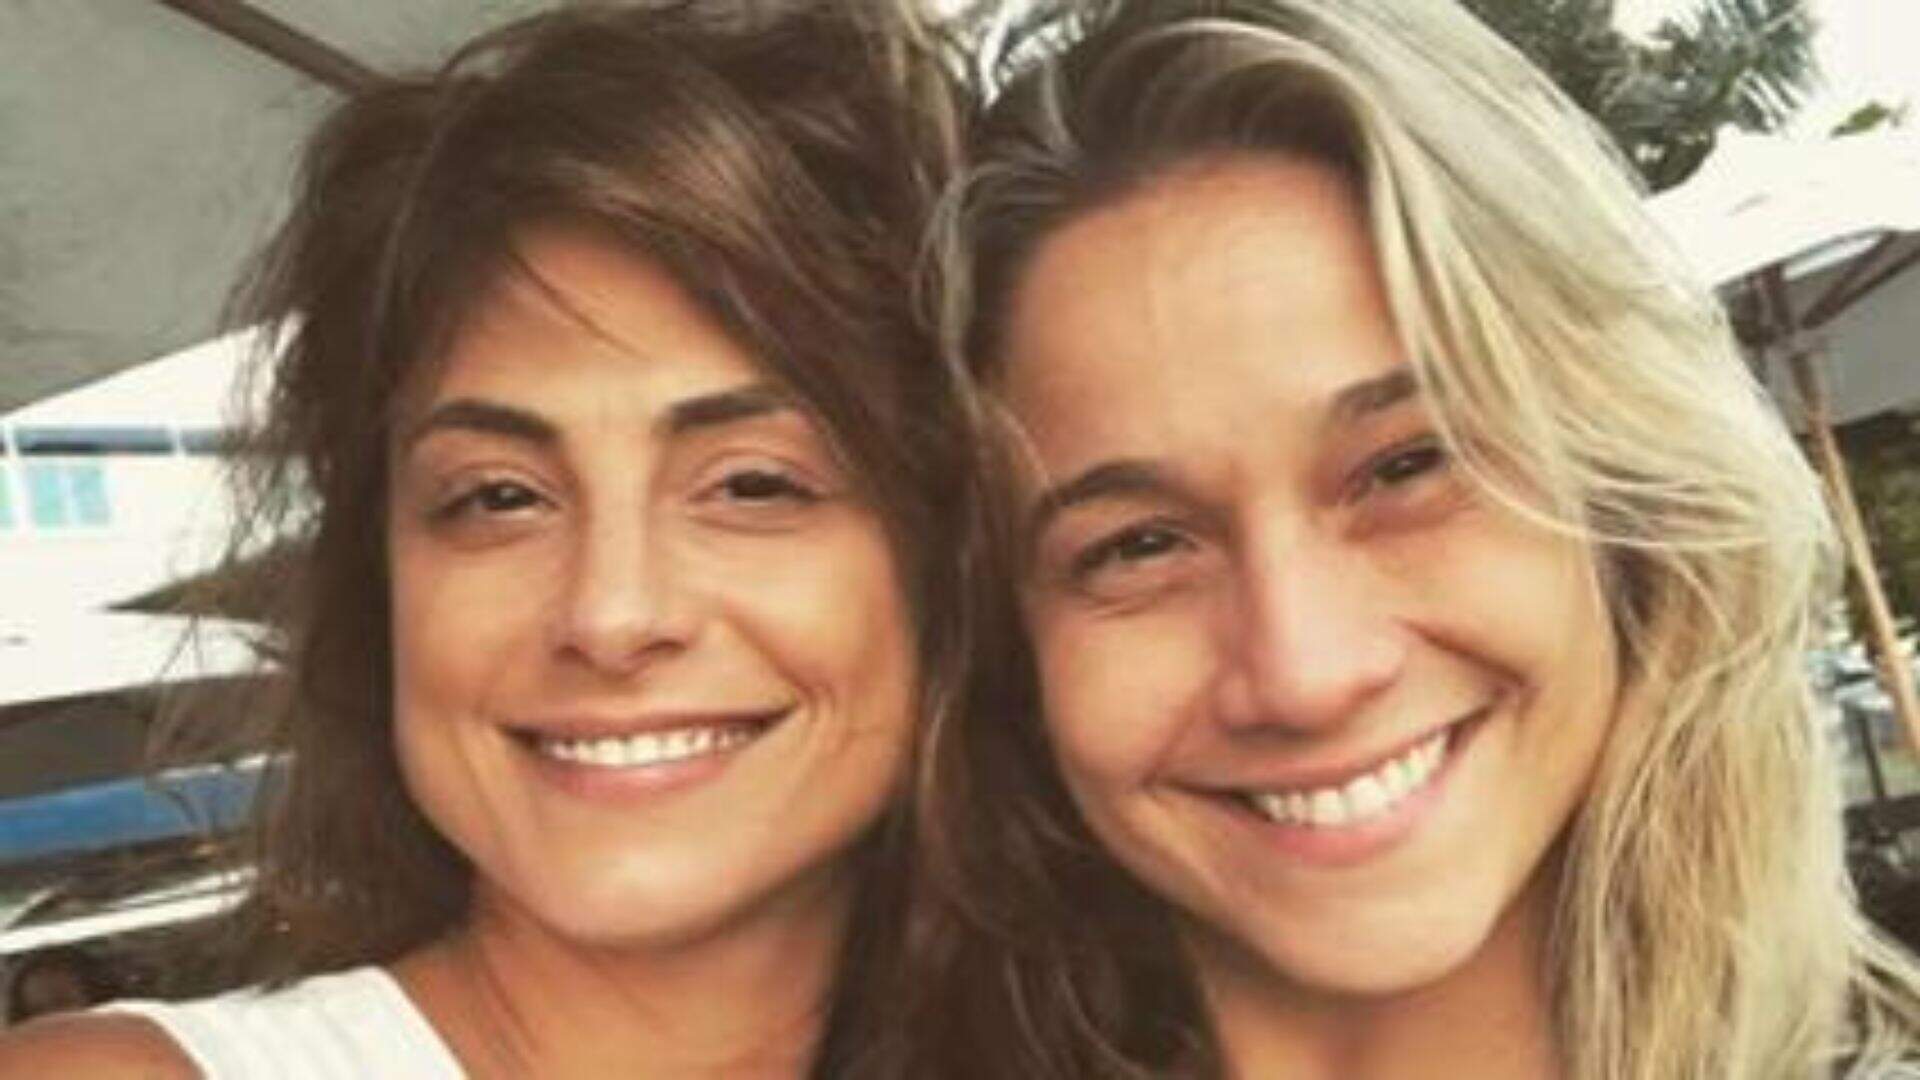 No Catar, Fernanda Gentil passa por situação inusitada com casal de brasileiras - Metropolitana FM